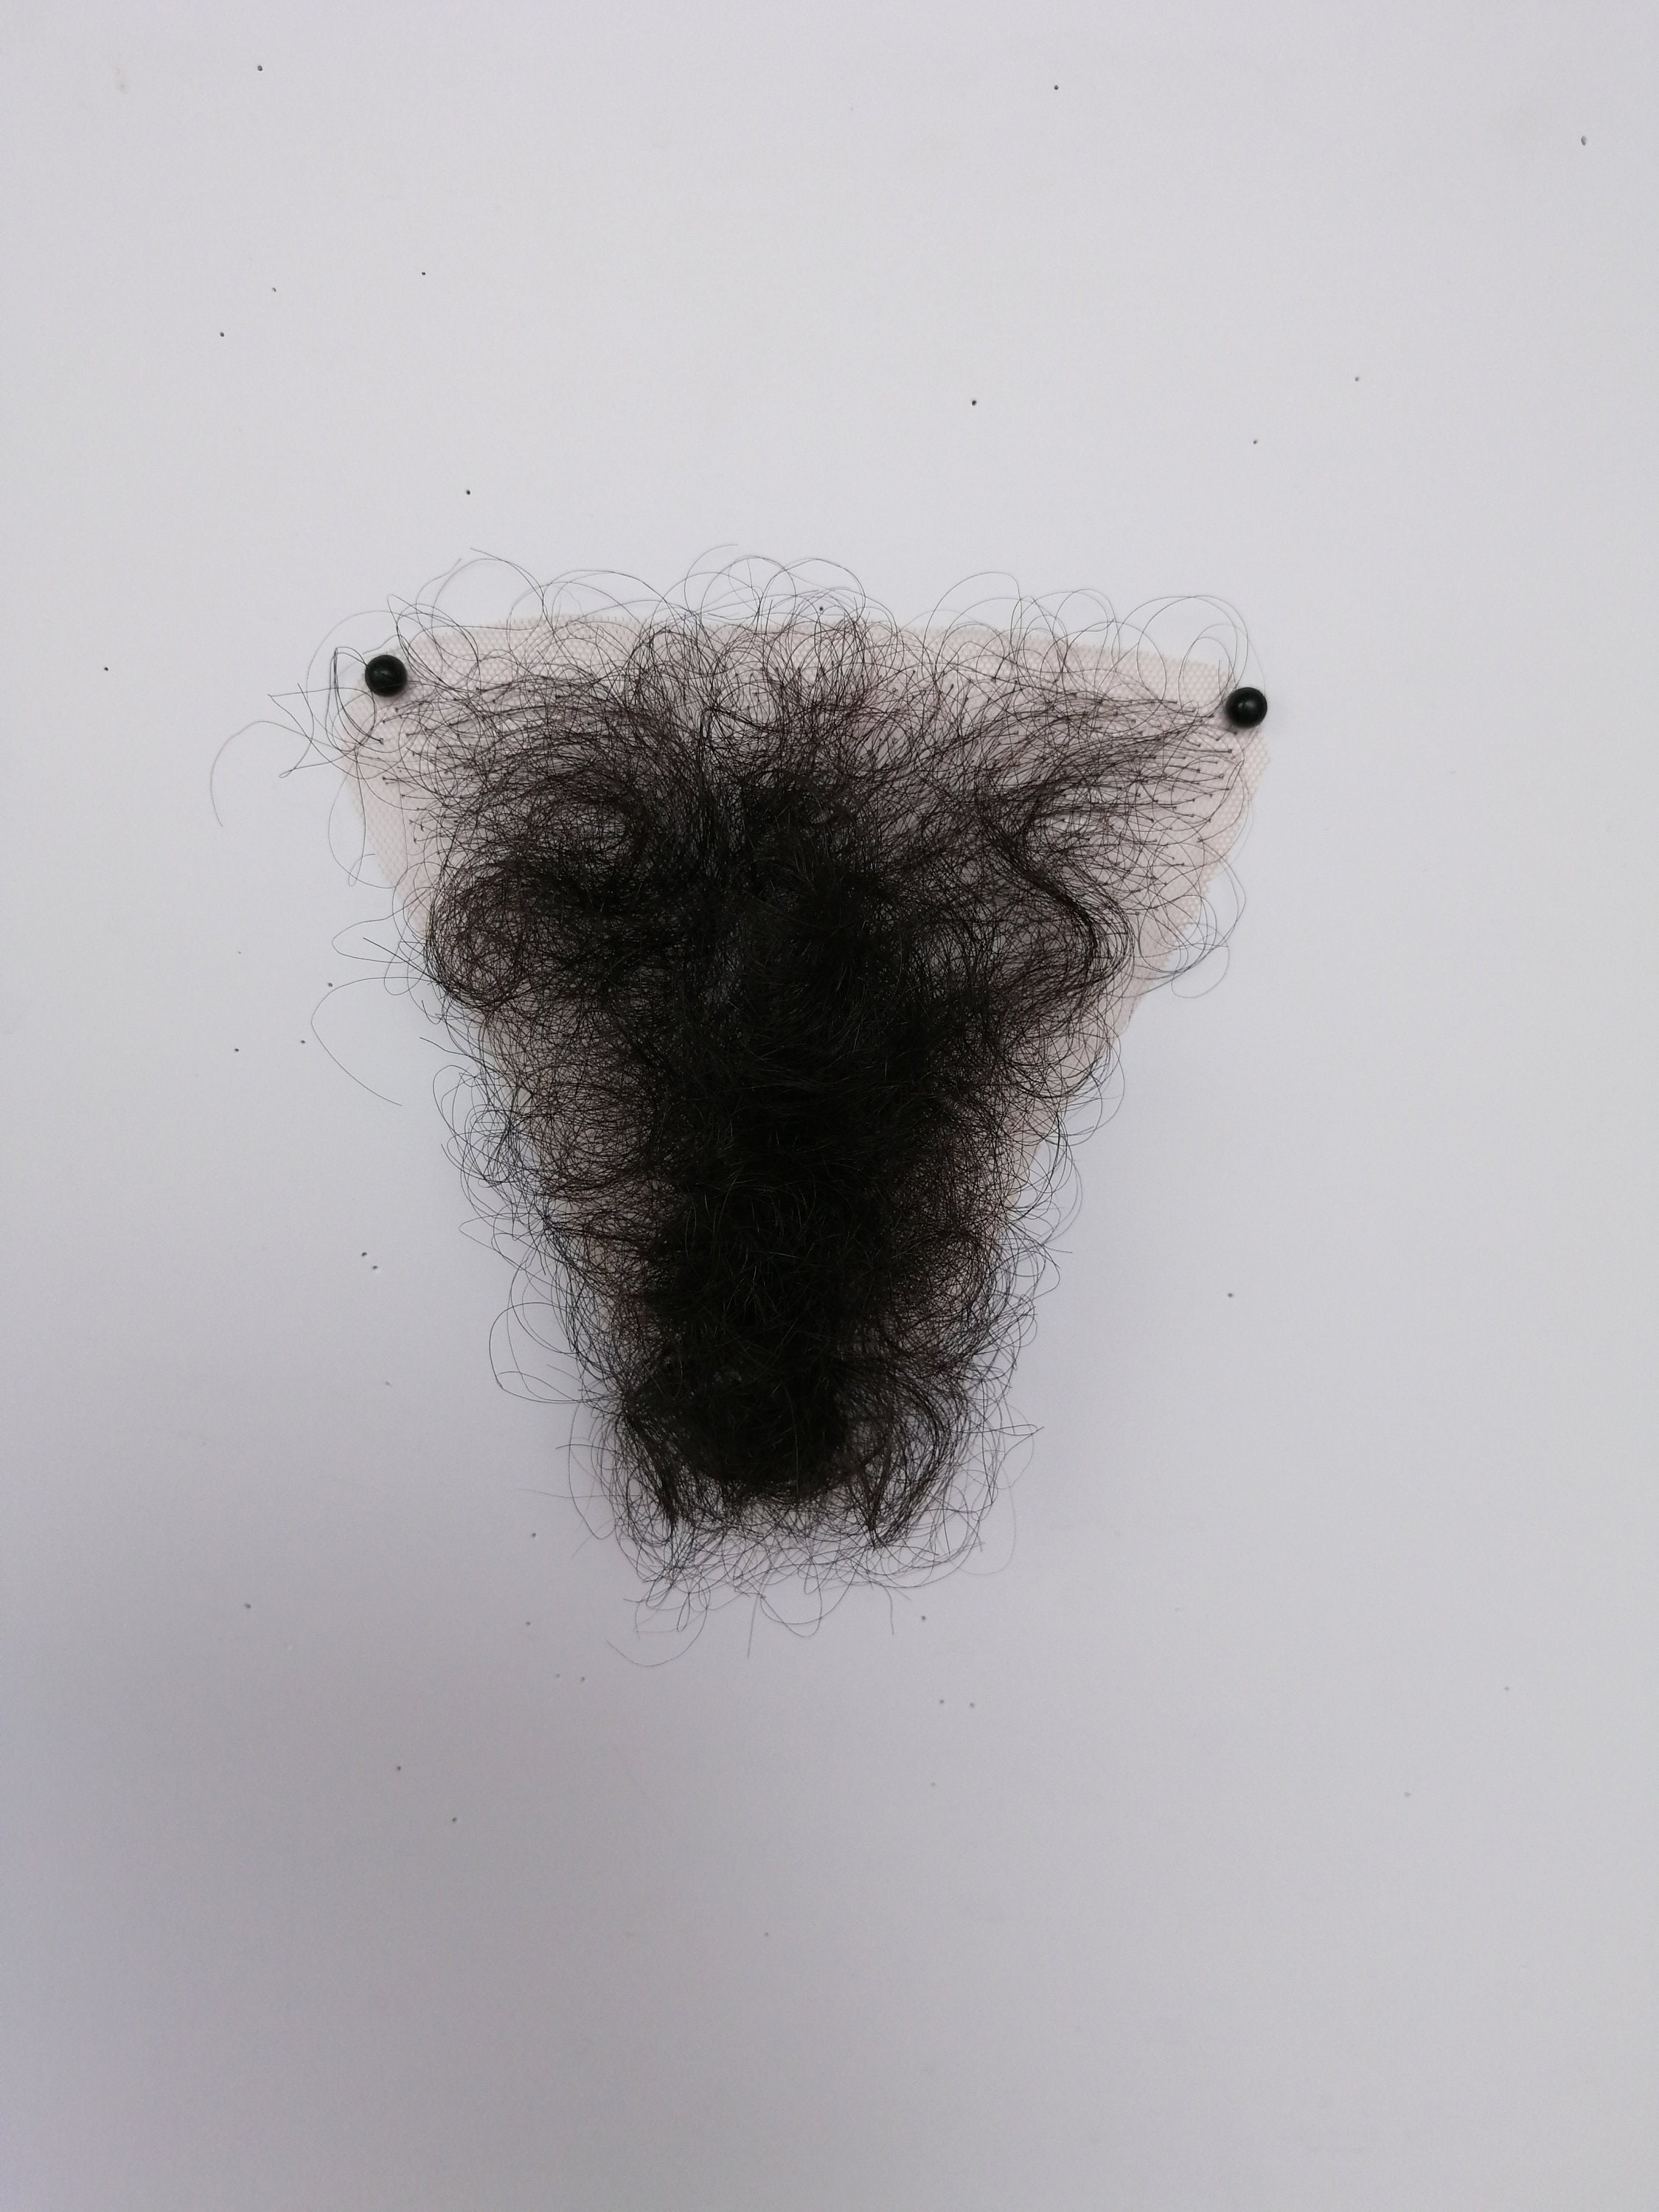 Merkin Pubic Toupee Pubic Wig Big Bush Human Hair in Four Colors, High Hair  Density 34g, .1.2oz -  Sweden